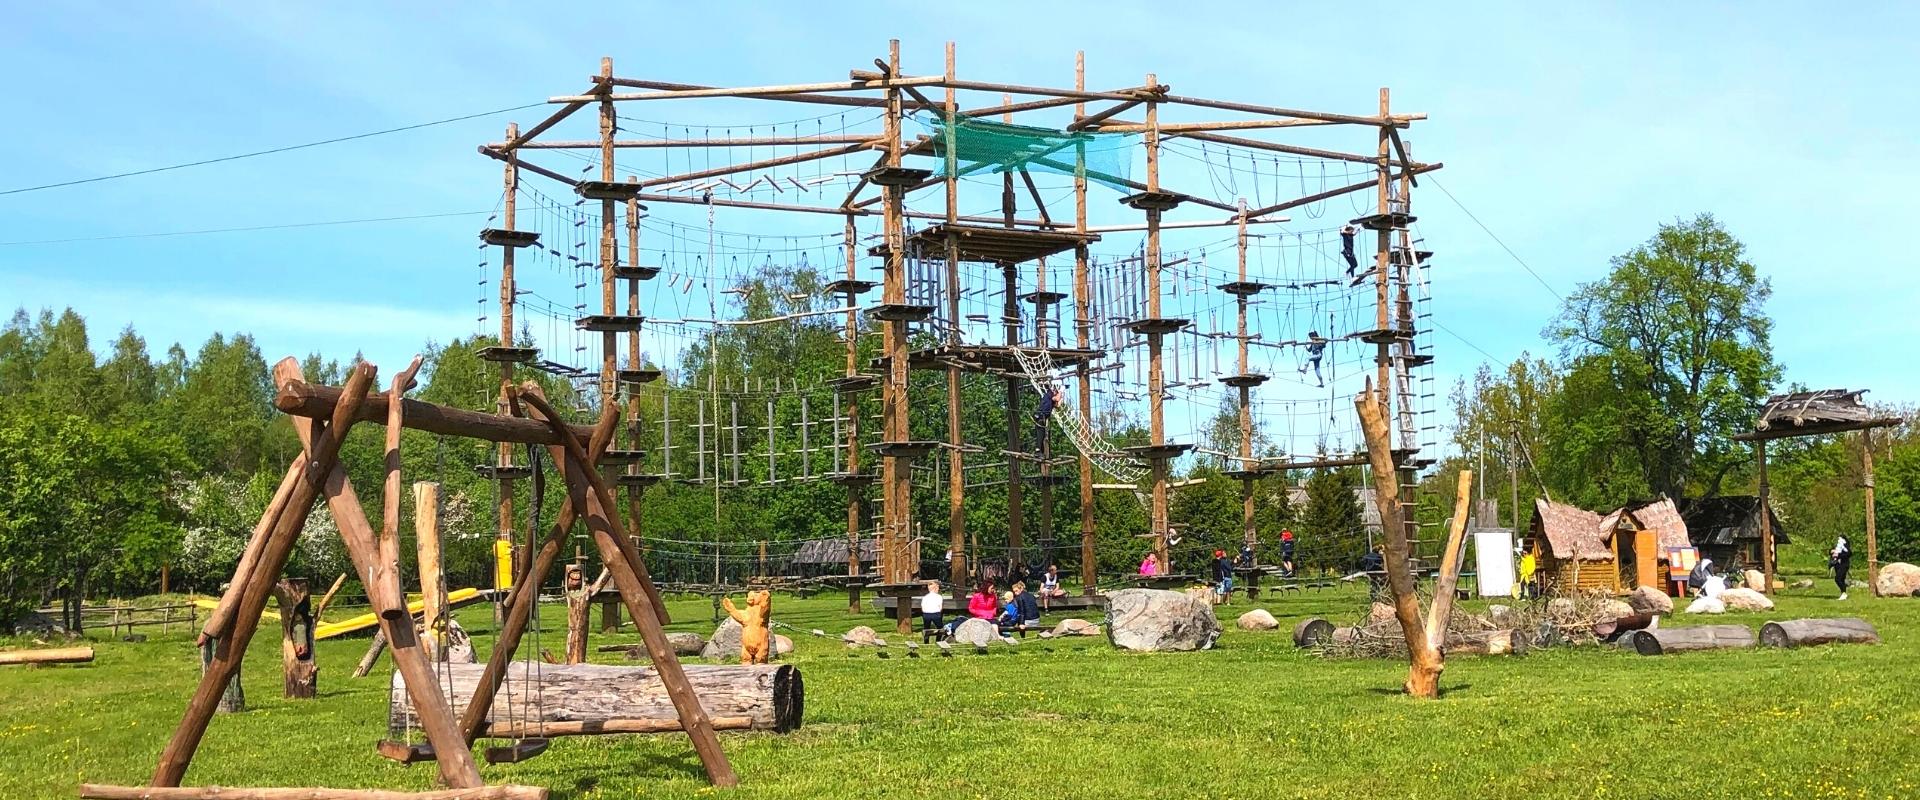 Asva Viikingiküla seikluspark